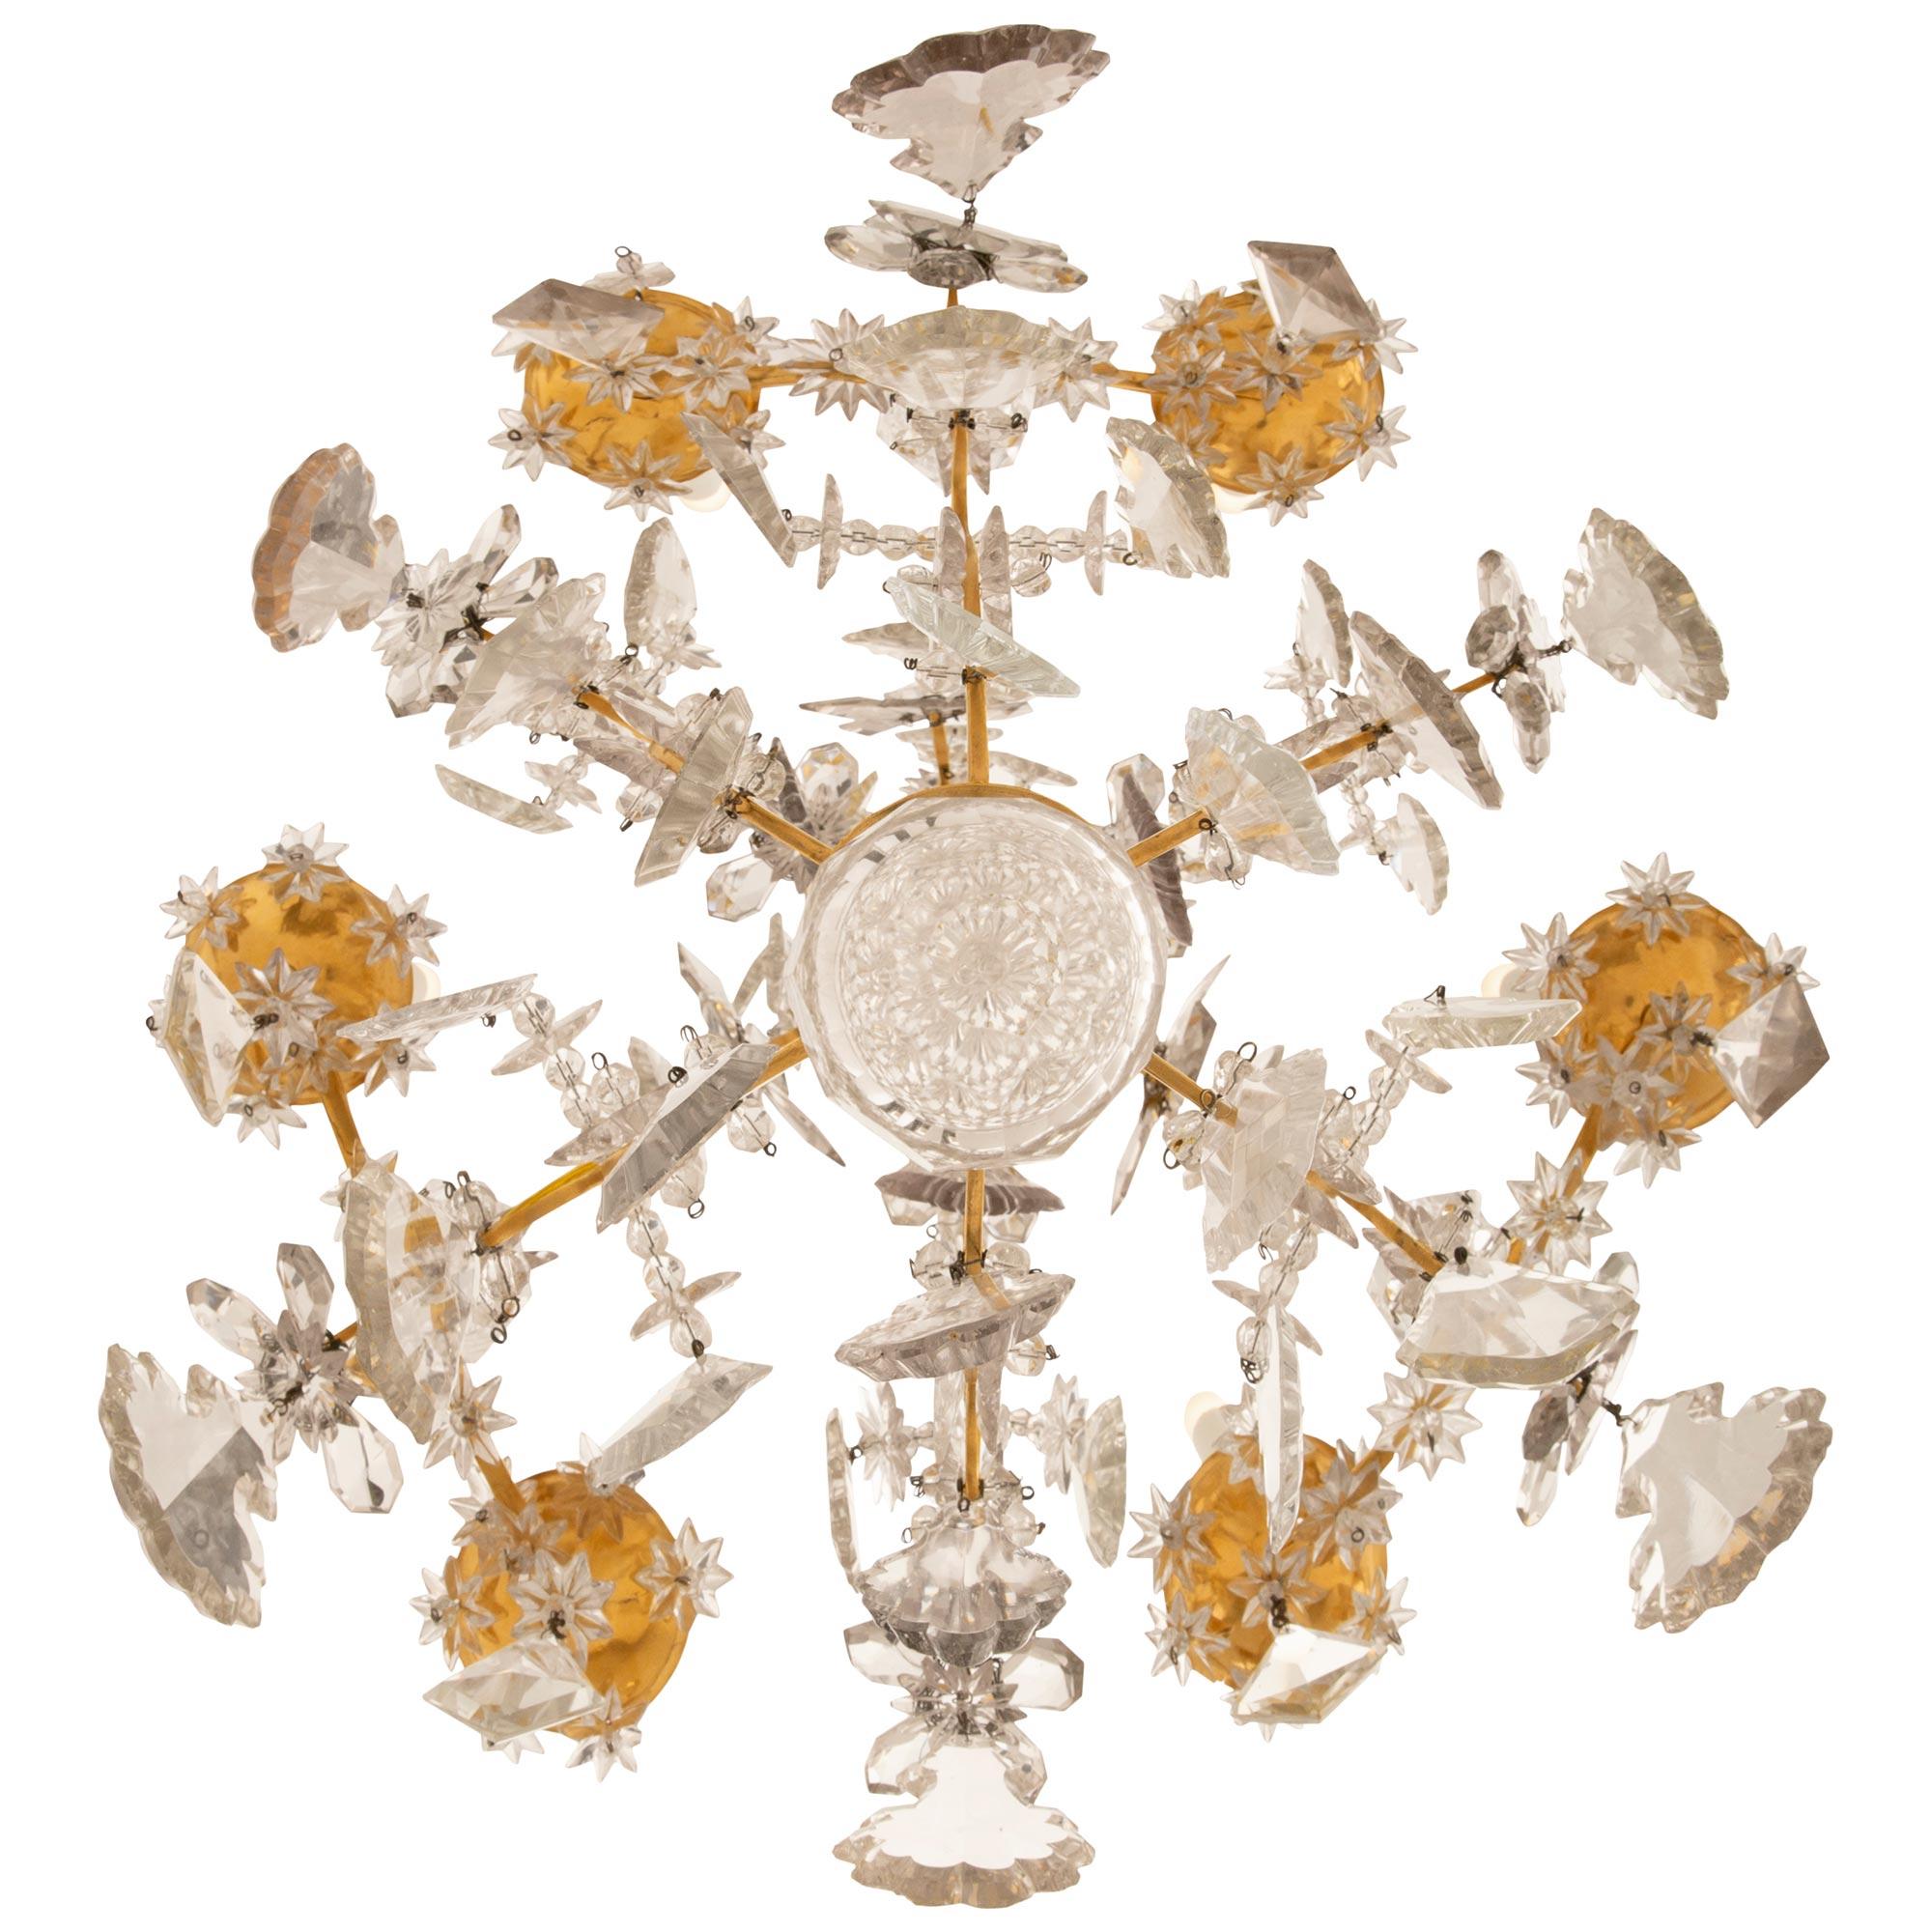 Magnifique lustre de grande qualité en bronze doré et cristal de Baccarat, datant du XVIIIe siècle, de style Louis XV. Ce lustre à six bras et six lumières est centré par une boule de cristal finement taillée avec une rosette et trois perles de